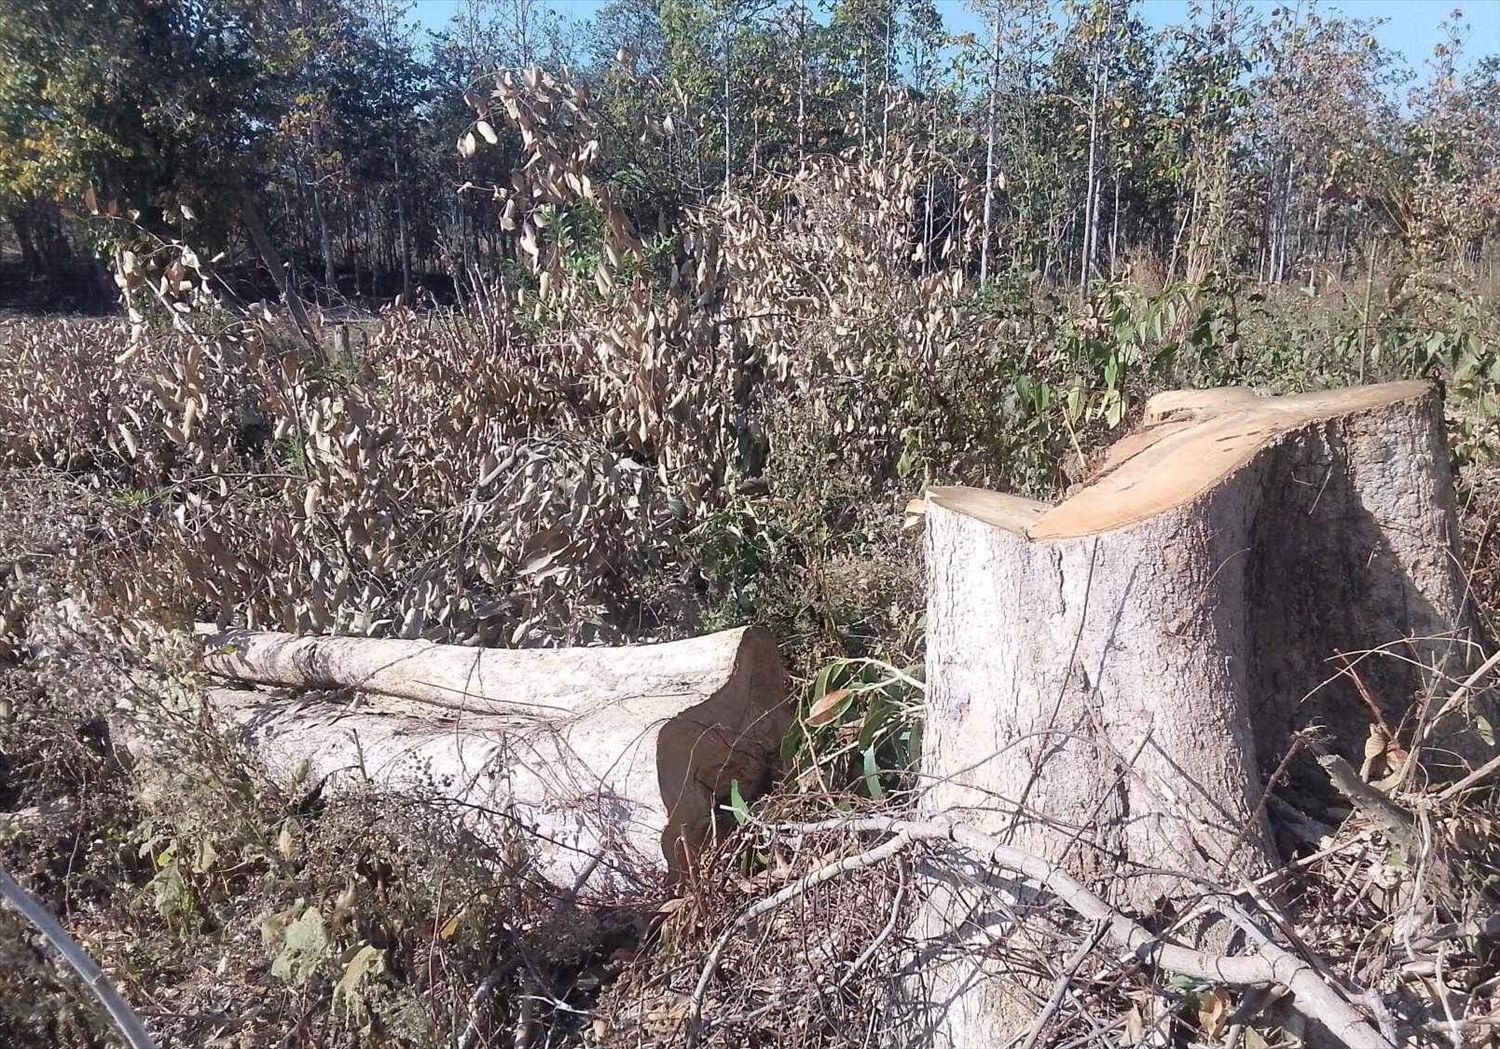  Hàng trăm cây rừng trên 15 năm tuổi trở lên bị nhóm đối tượng triệt hạ hàng loạt tại xã Ia Mơ